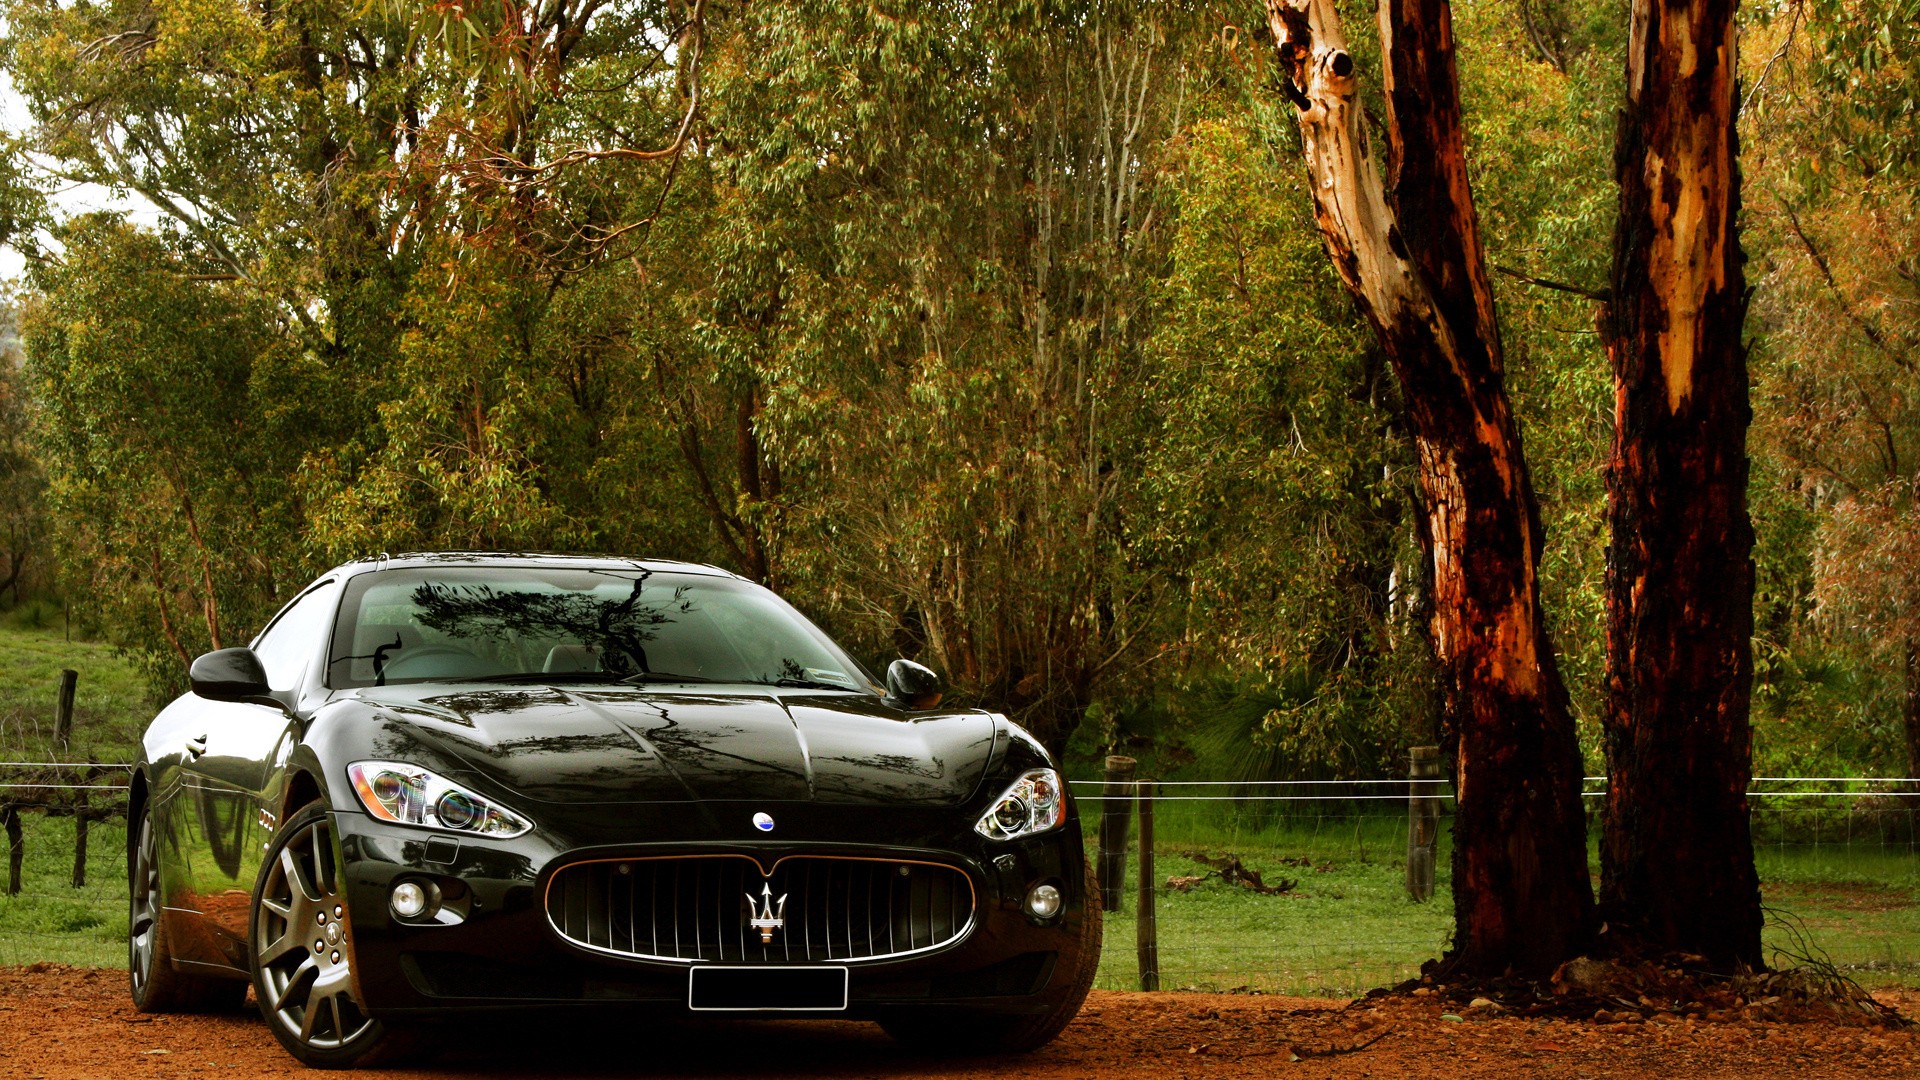 47+] Maserati Wallpaper HD - WallpaperSafari